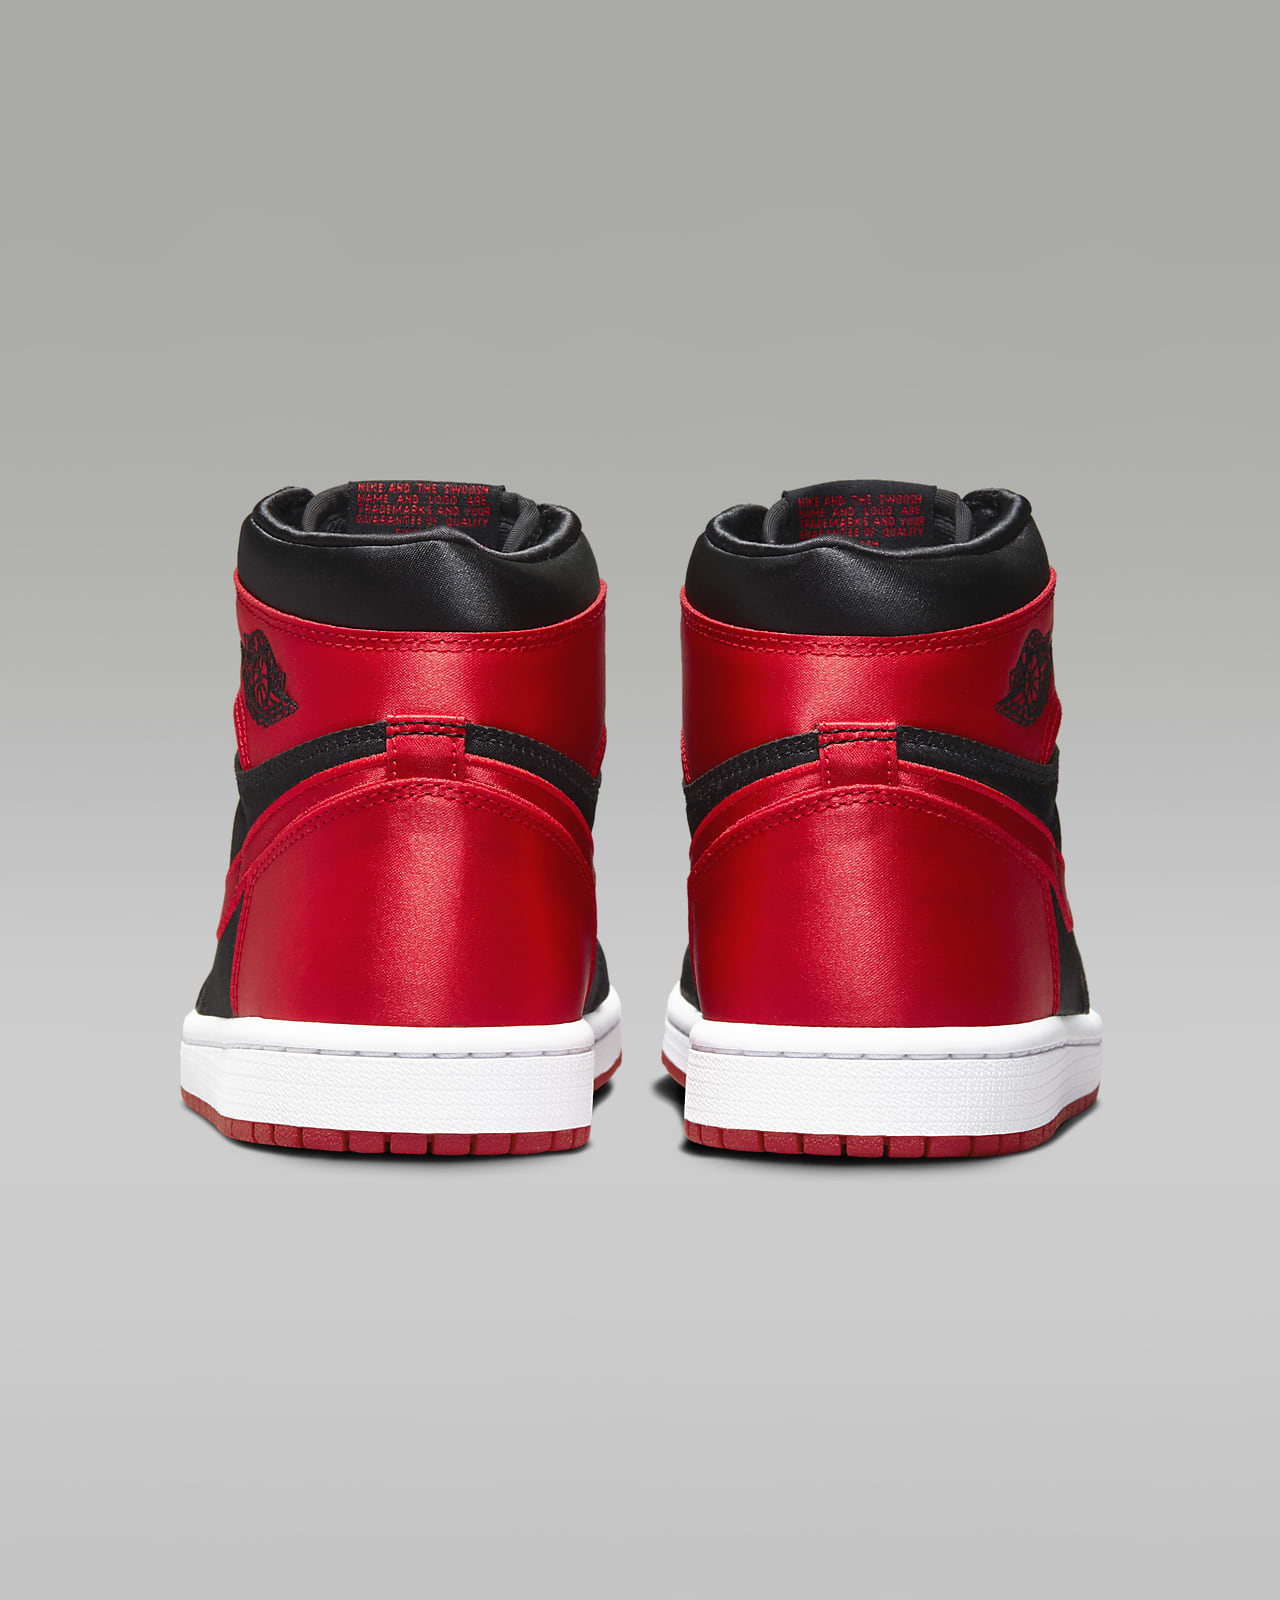 Sprog Kronisk ekko Air Jordan 1 Retro High OG "Satin Bred" Women's Shoes. Nike.com